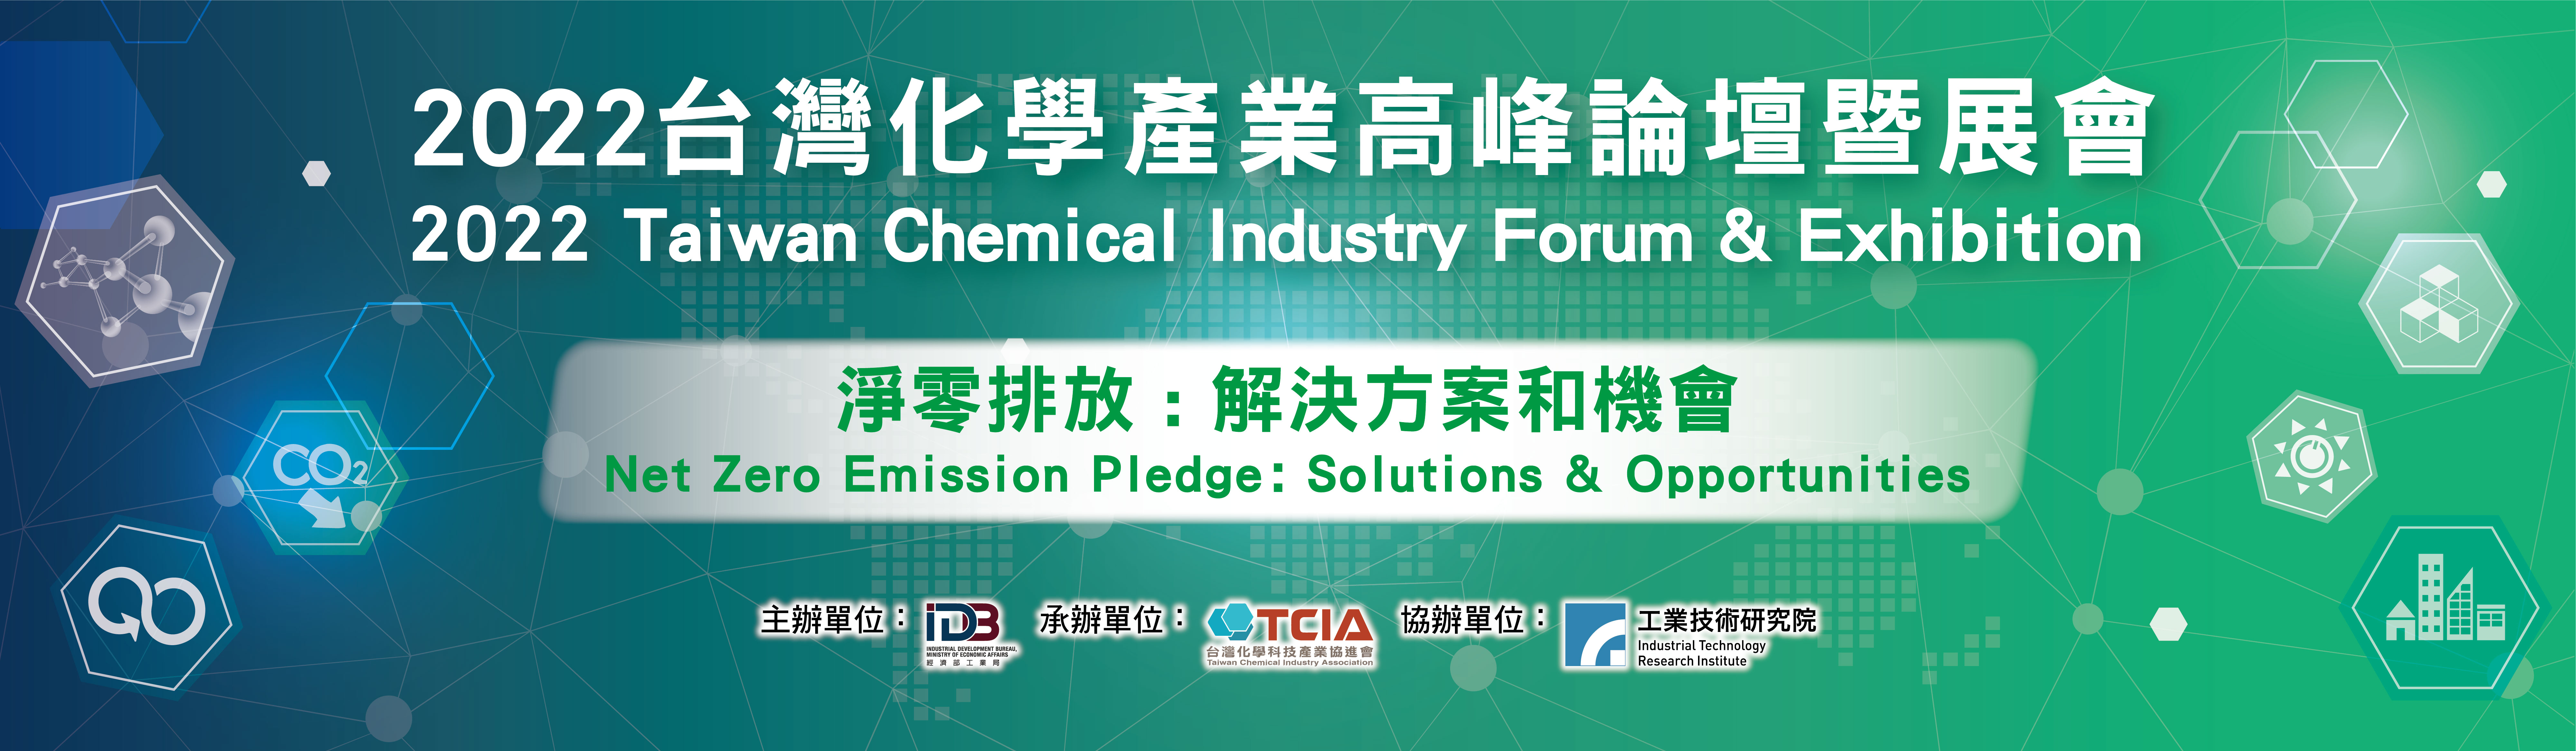 2022台灣化學產業高峰論壇暨展會